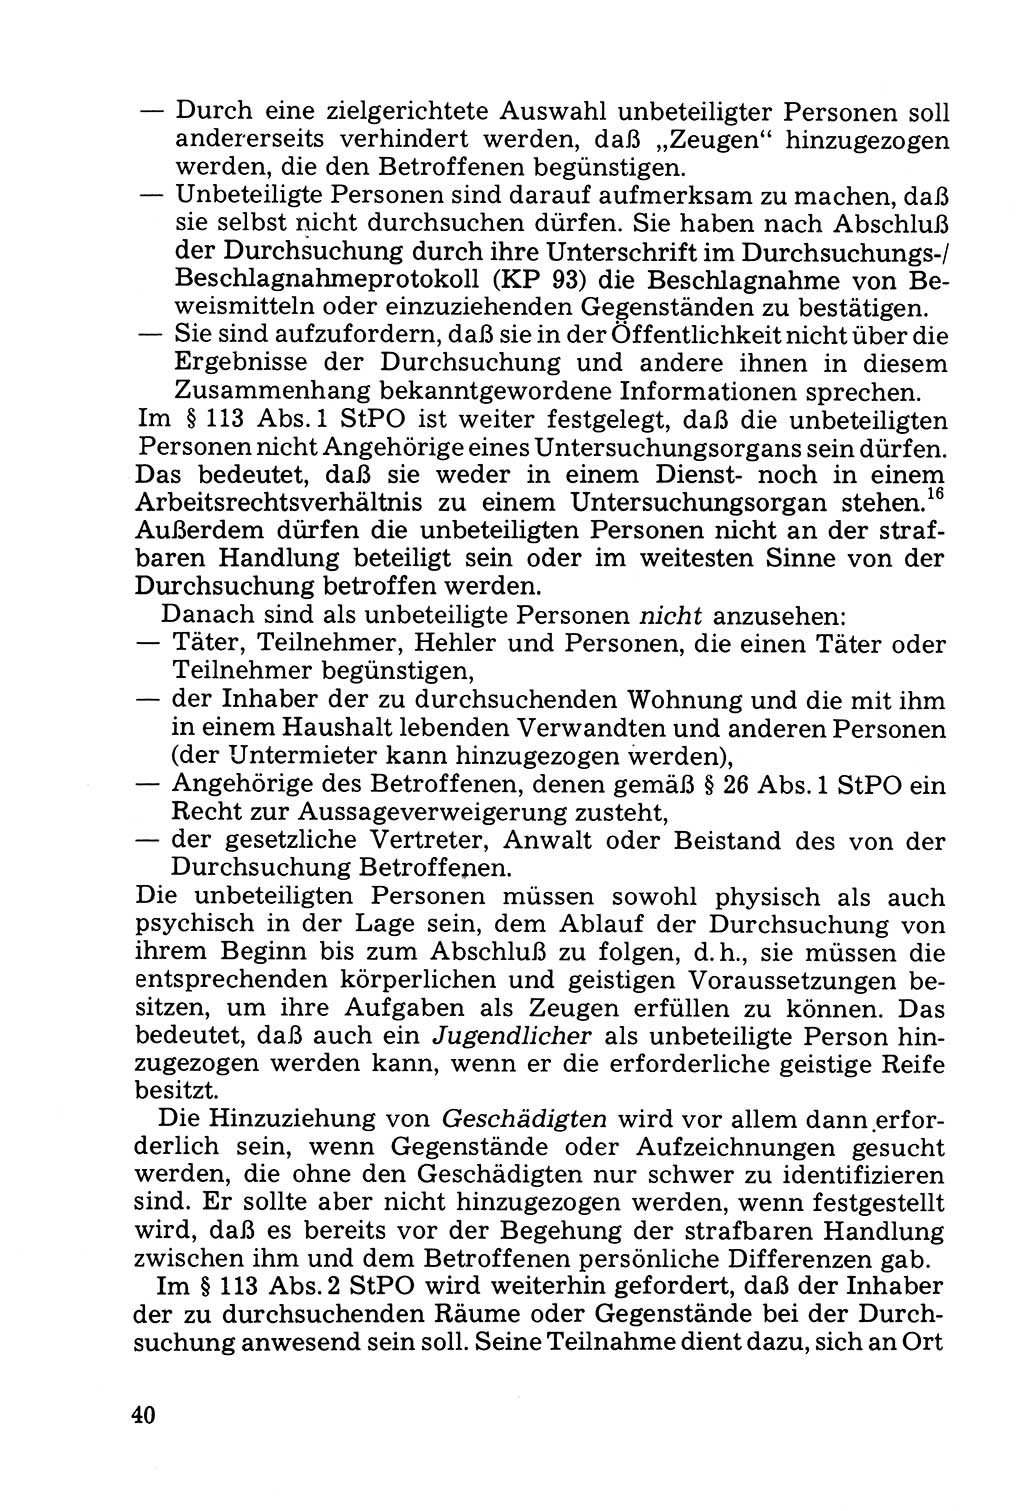 Die Durchsuchung und die Beschlagnahme [Deutsche Demokratische Republik (DDR)] 1979, Seite 40 (Durchs. Beschl. DDR 1979, S. 40)